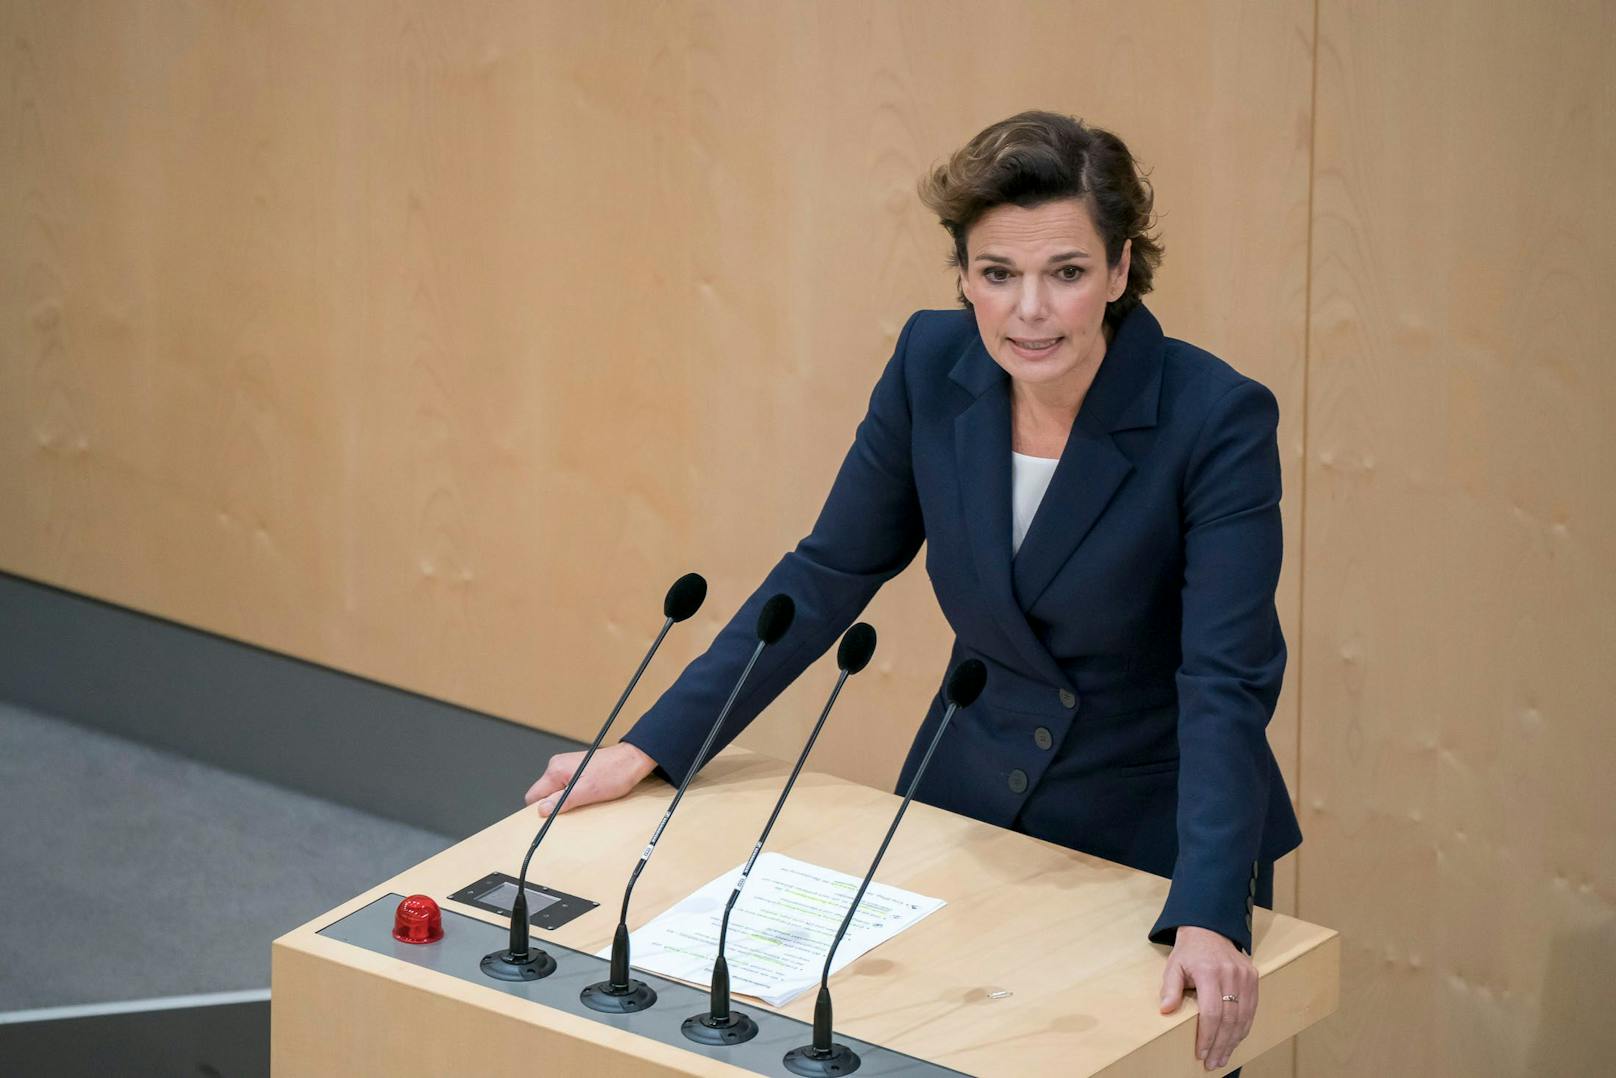 Wahlergebnis "schmerzt" SPÖ-Chefin Rendi-Wagner